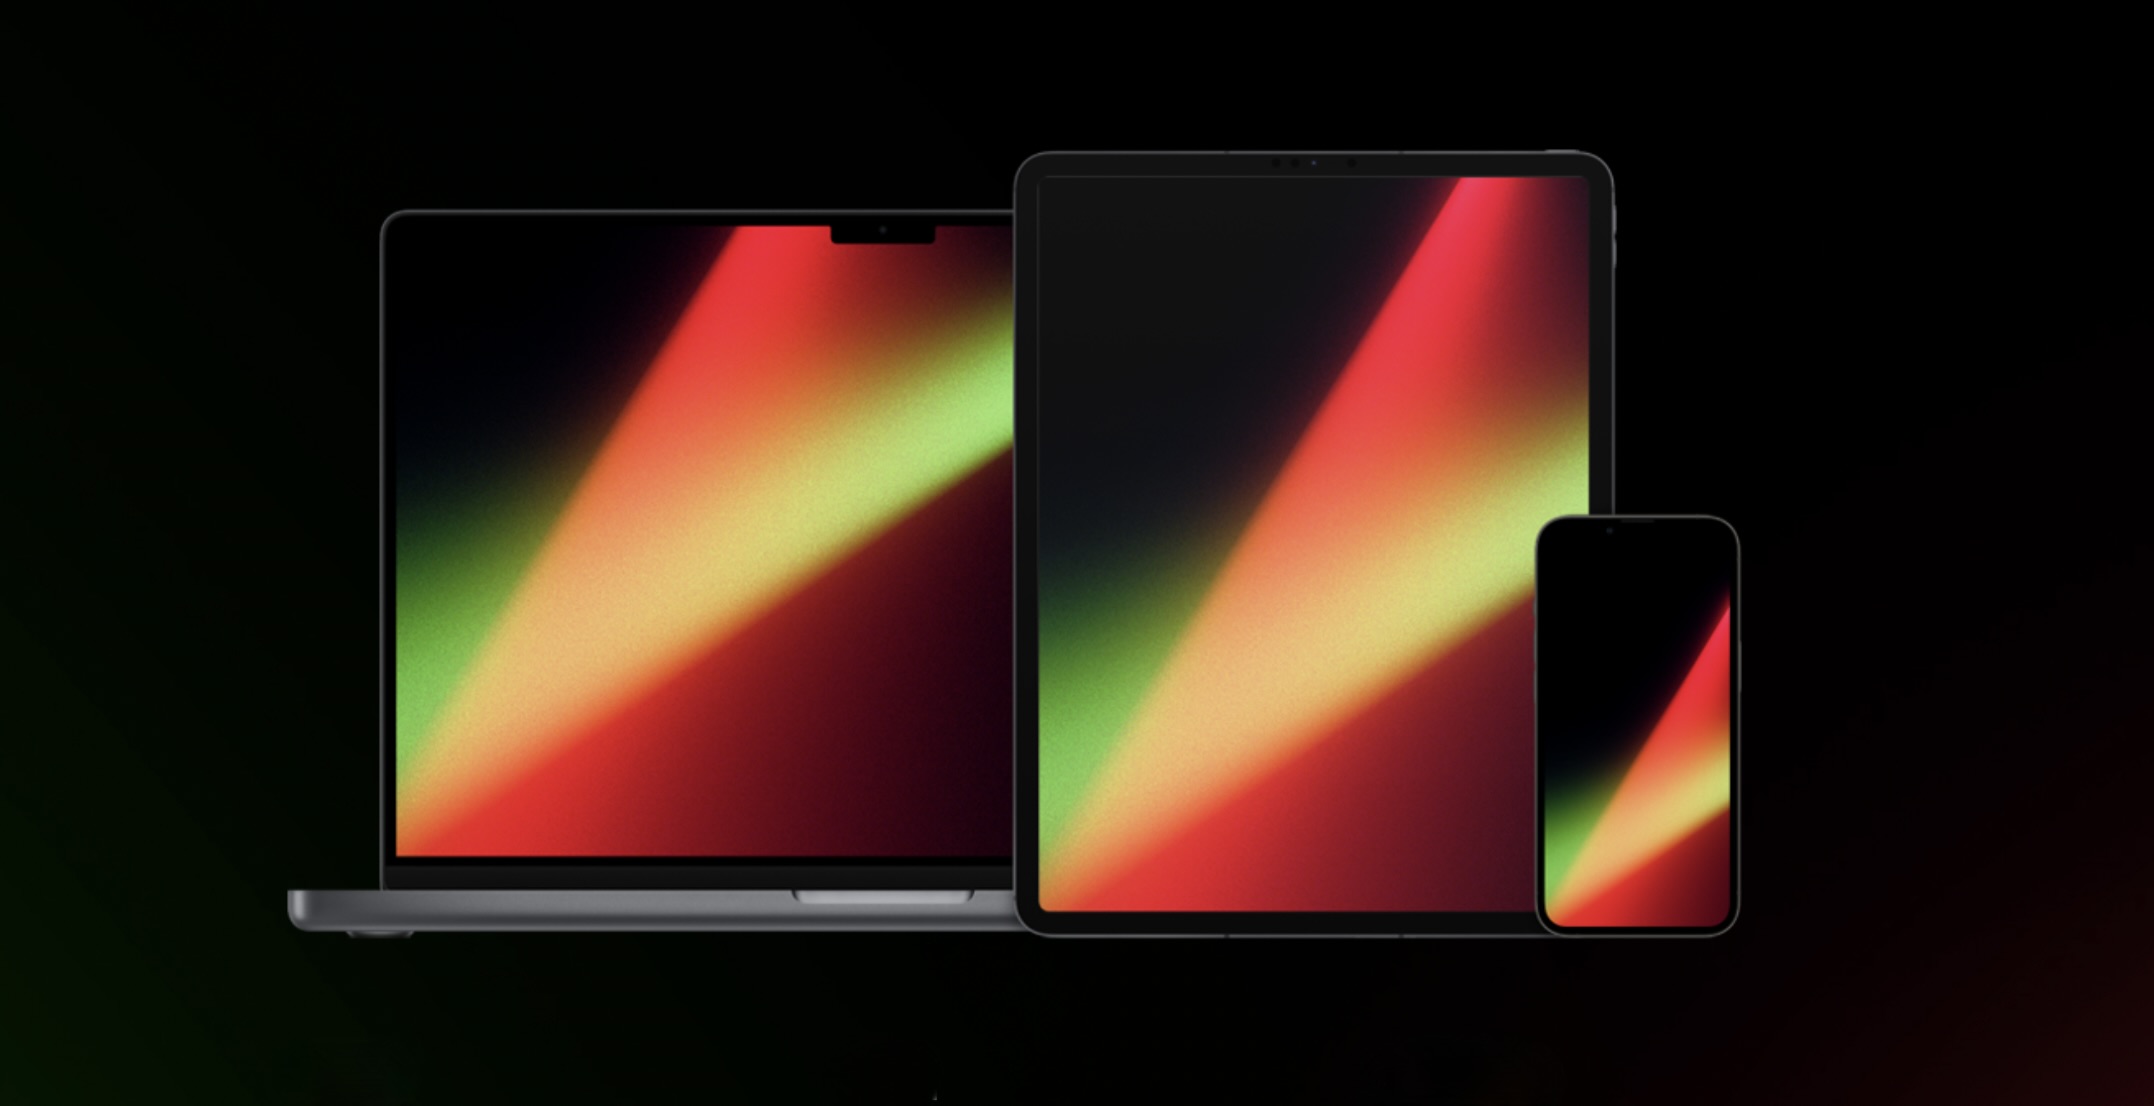 Hãy cùng tải xuống hình nền sáng tạo Unity Lights đầy ấn tượng, trên đó có quả táo đỏ tươi của Apple. Đây là hình nền hoàn hảo cho chiếc điện thoại của bạn để thể hiện phong cách độc đáo và đầy sáng tạo.